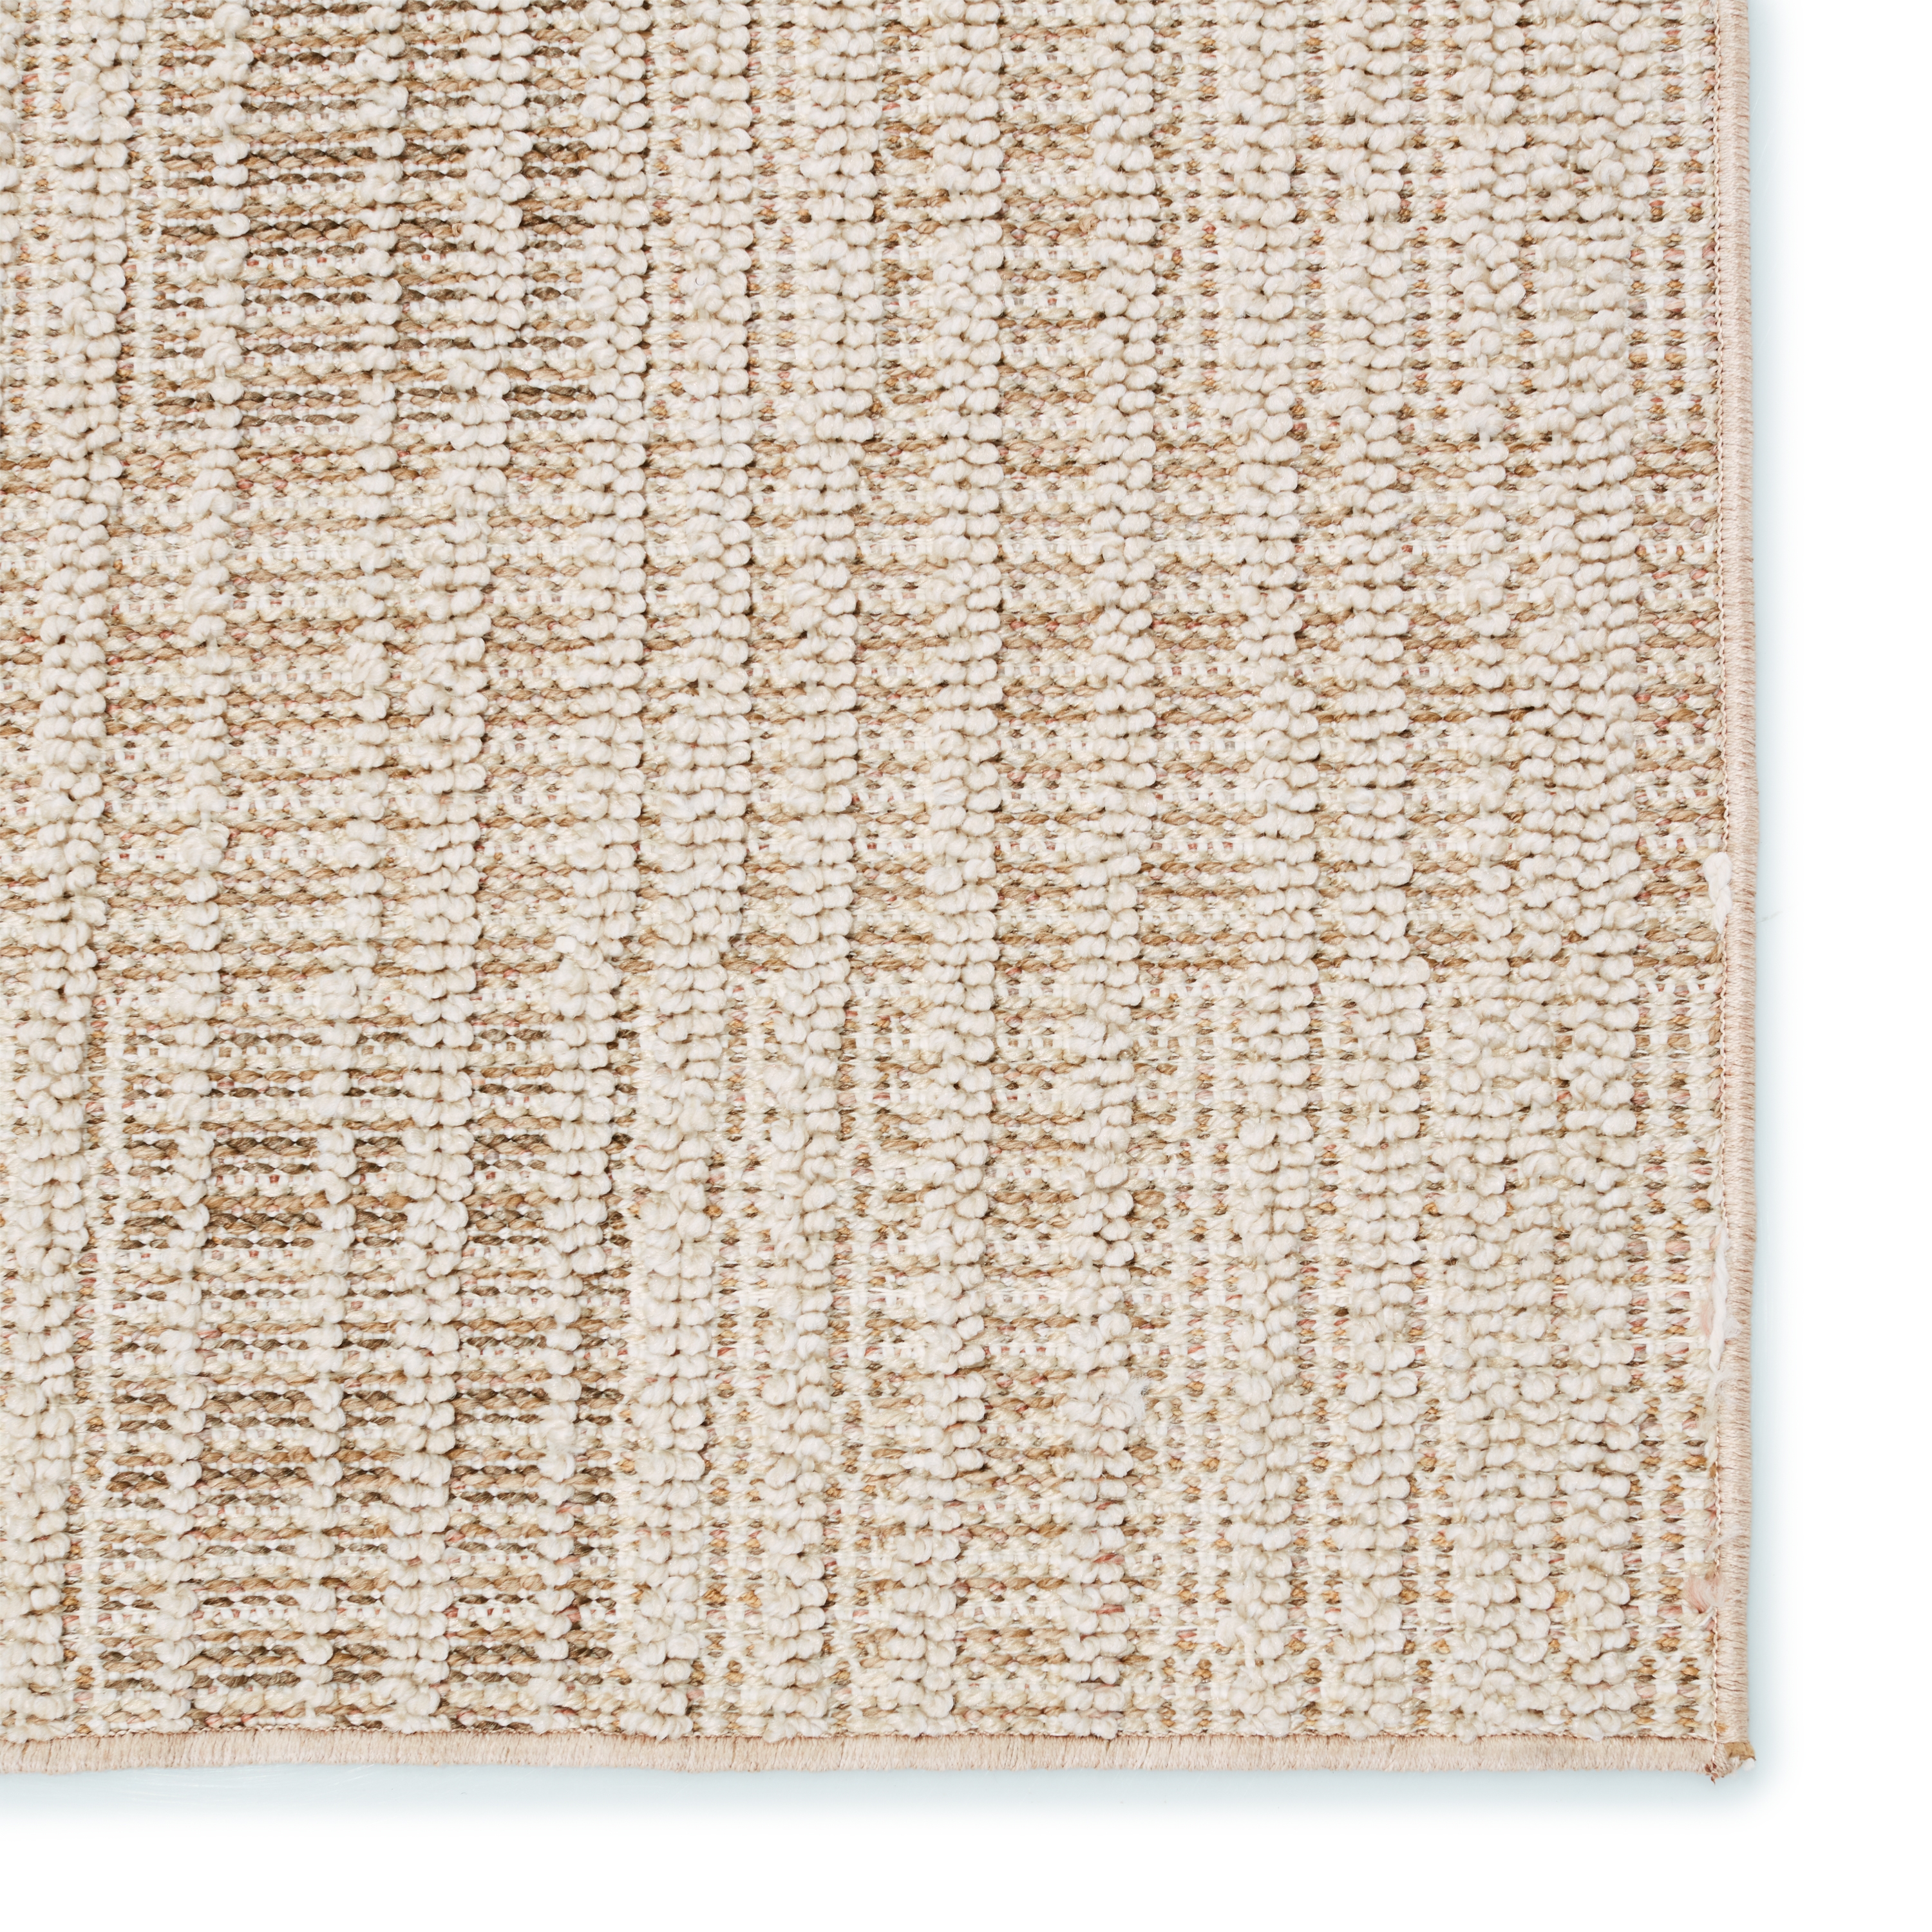 Aeor Indoor/ Outdoor Striped Area Rug, Beige & Light Brown, 6' x 9' - Image 3